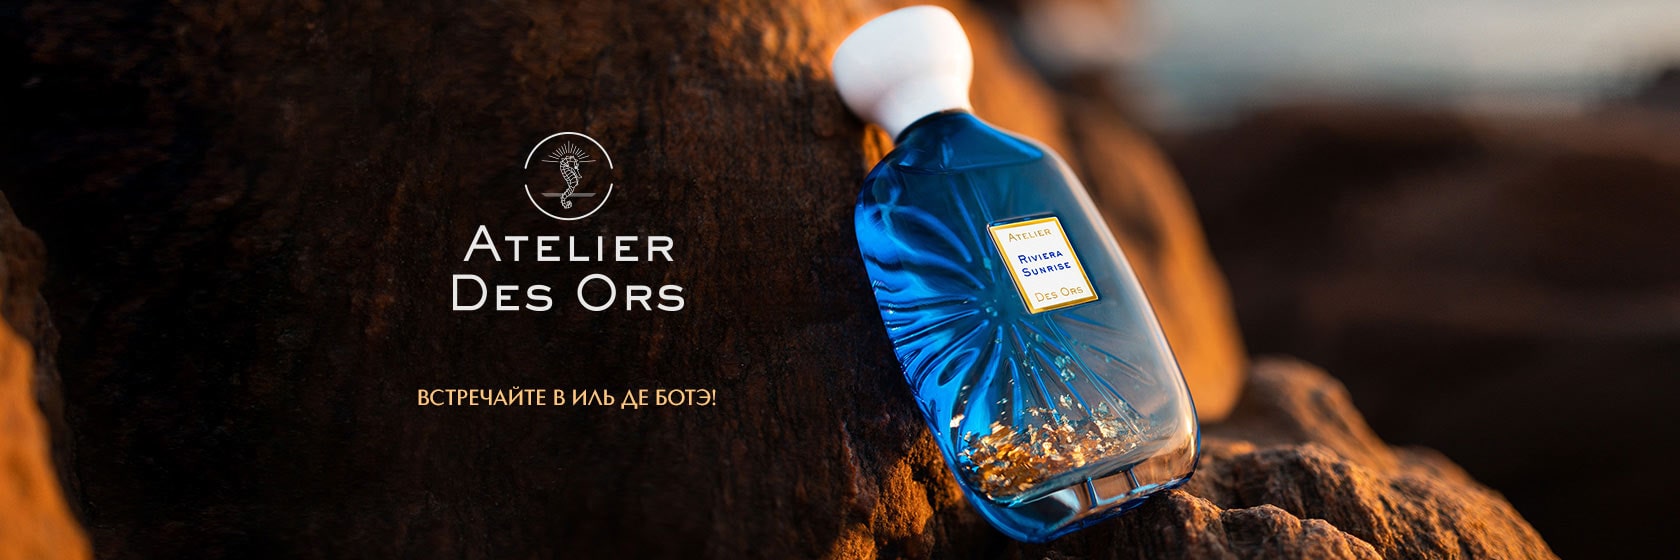 Встречайте новый бренд Atelier Des Ors в ИЛЬ ДЕ БОТЭ!